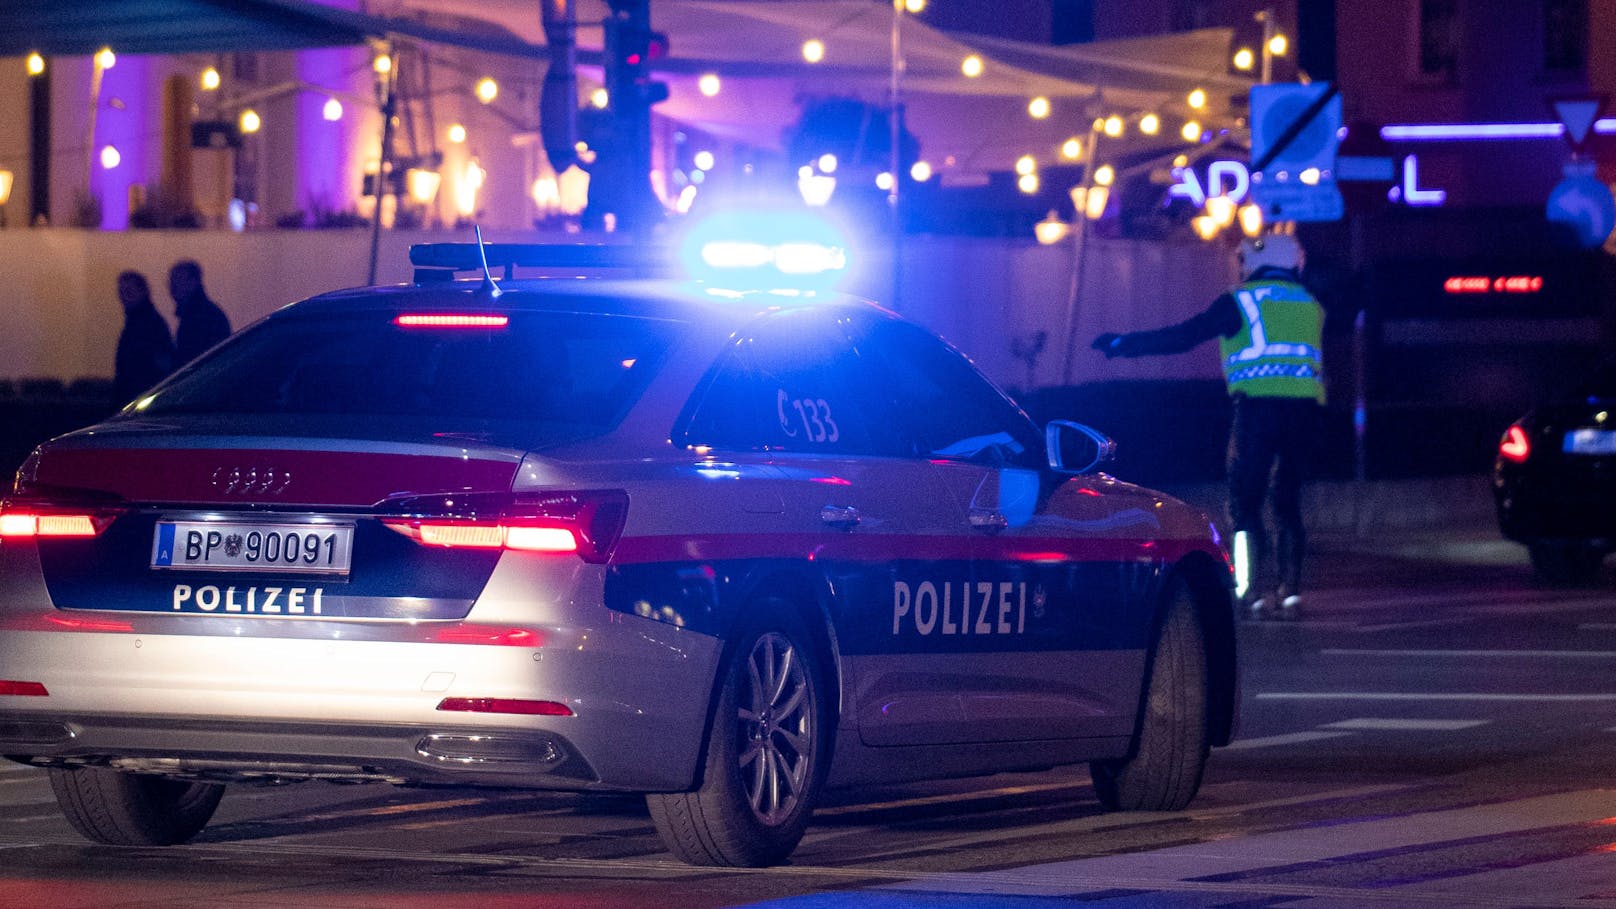 Ein Polizeifahrzeug der Wiener Polizei im Blaulicht-Einsatz. (Symbolbild)